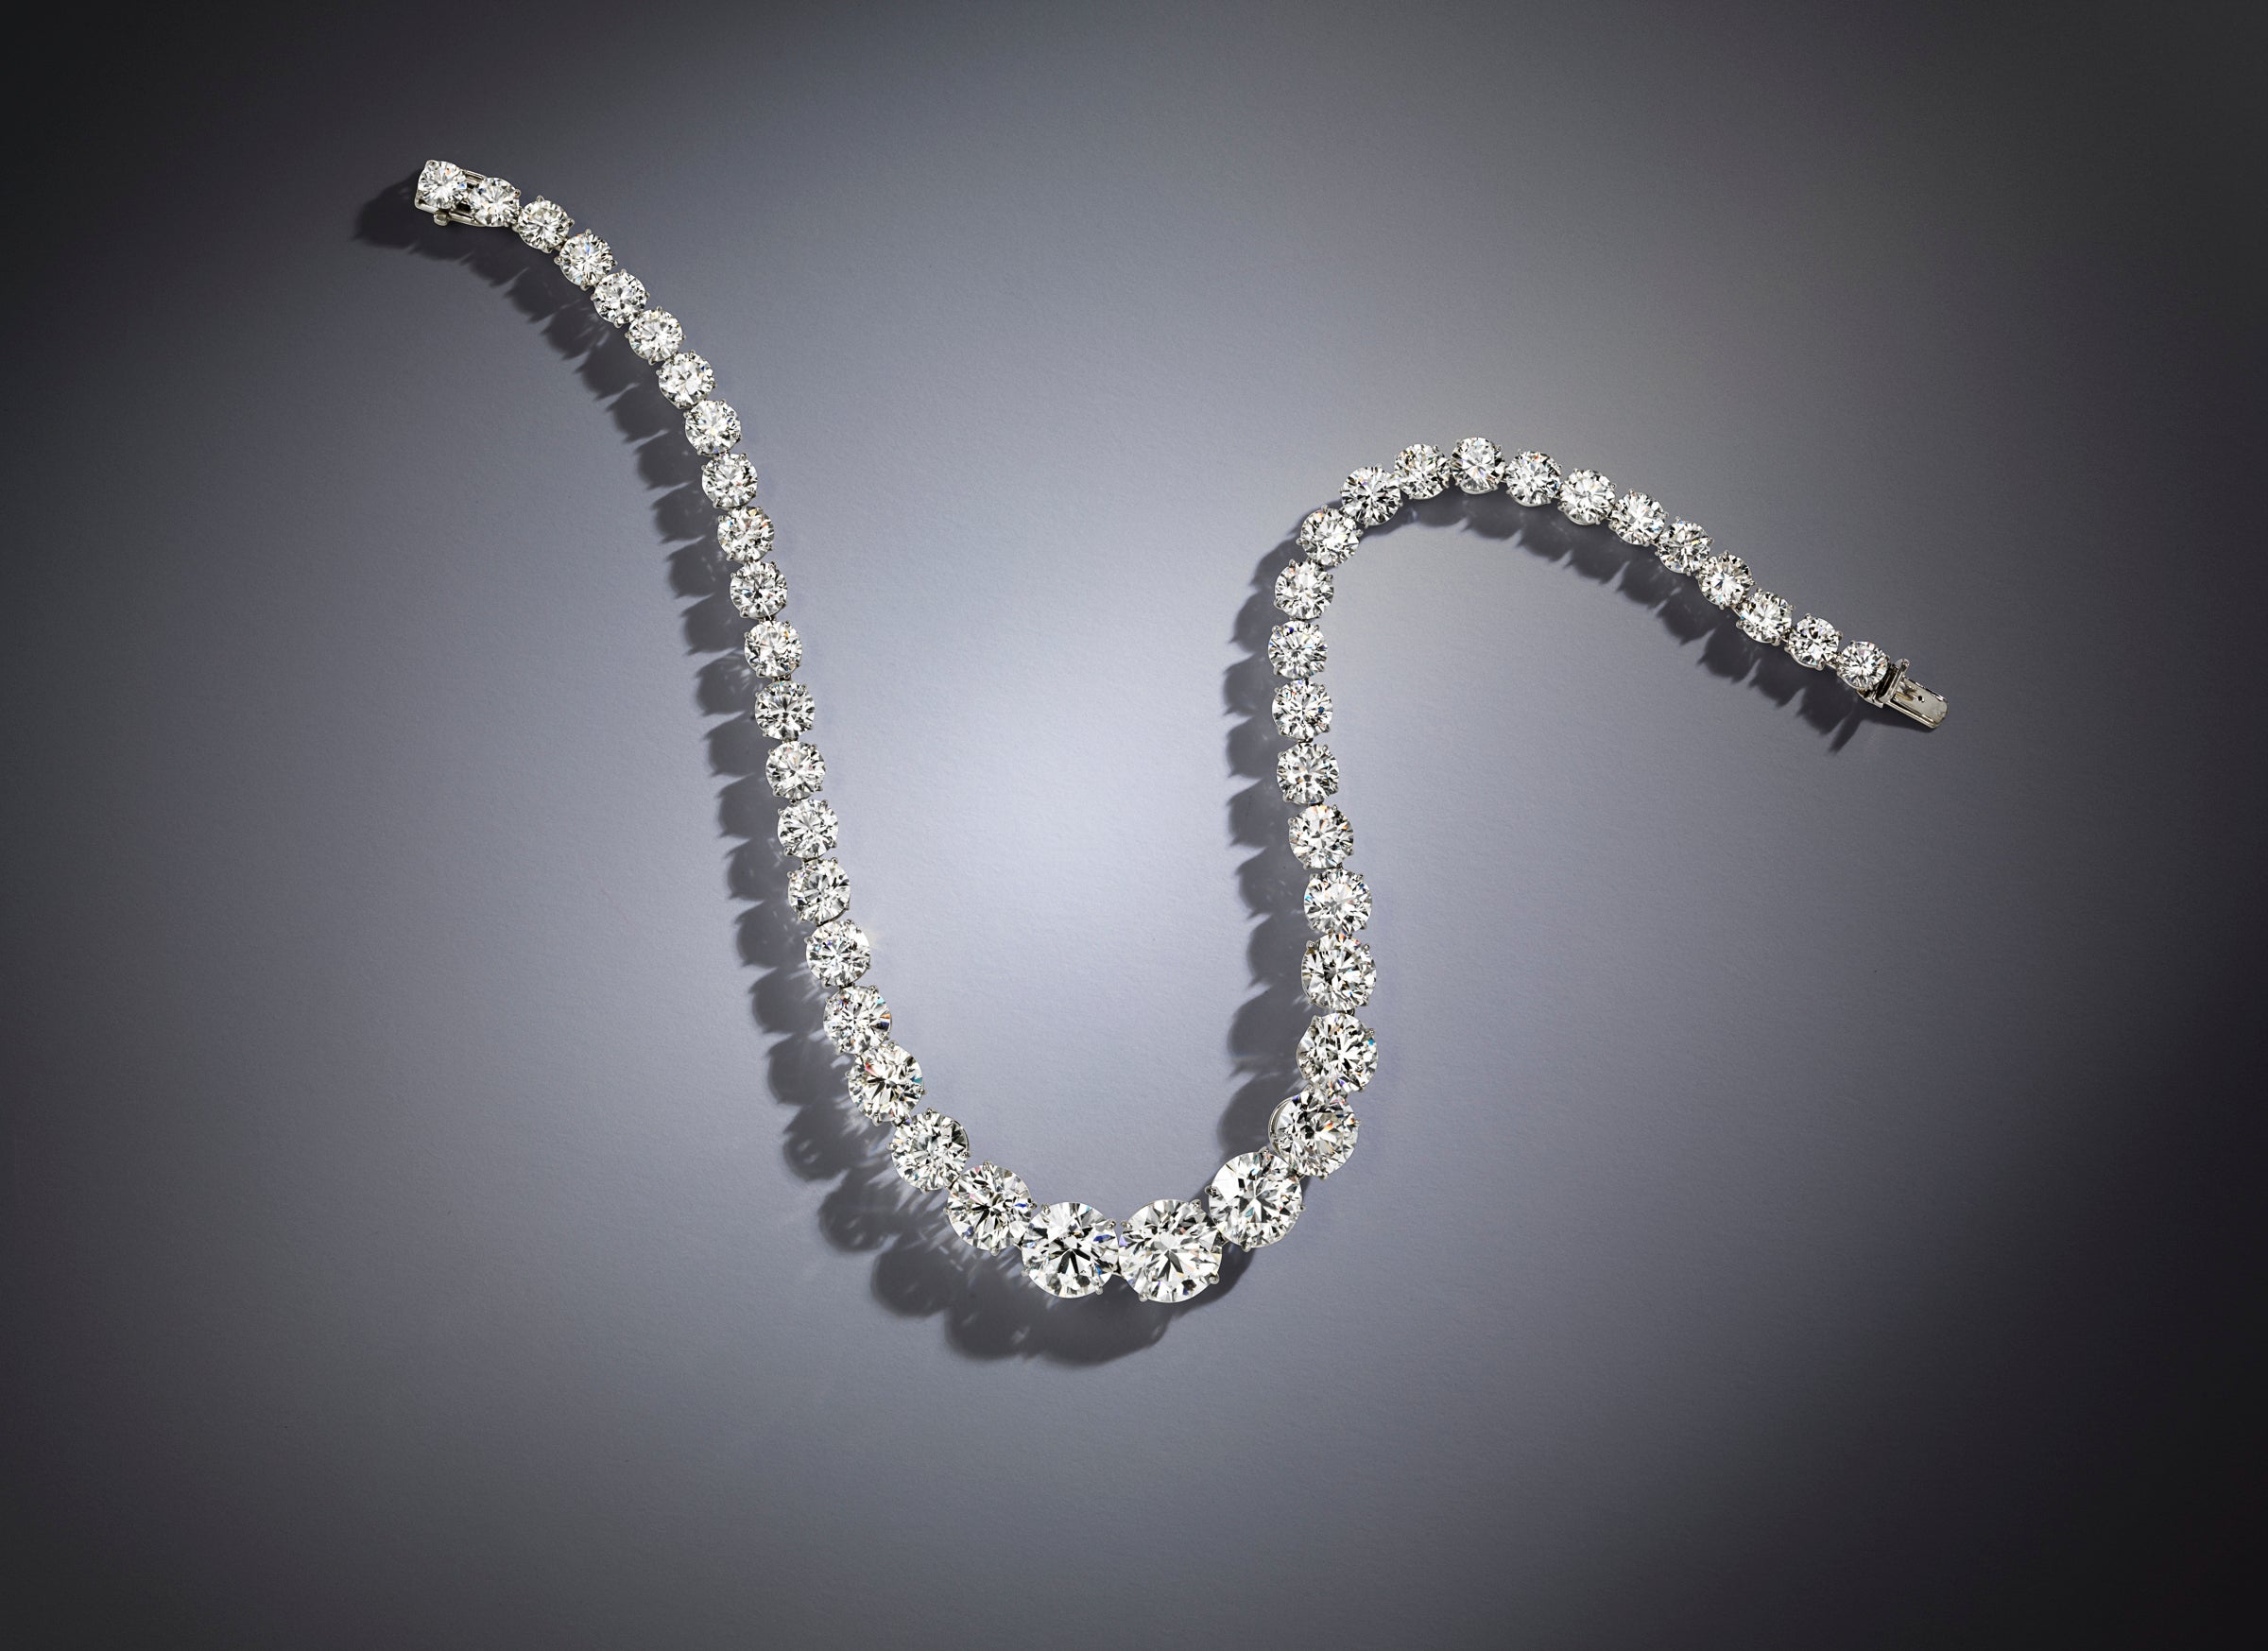 Bonhams to Auction Zsa Zsa Gabor Diamond Necklace